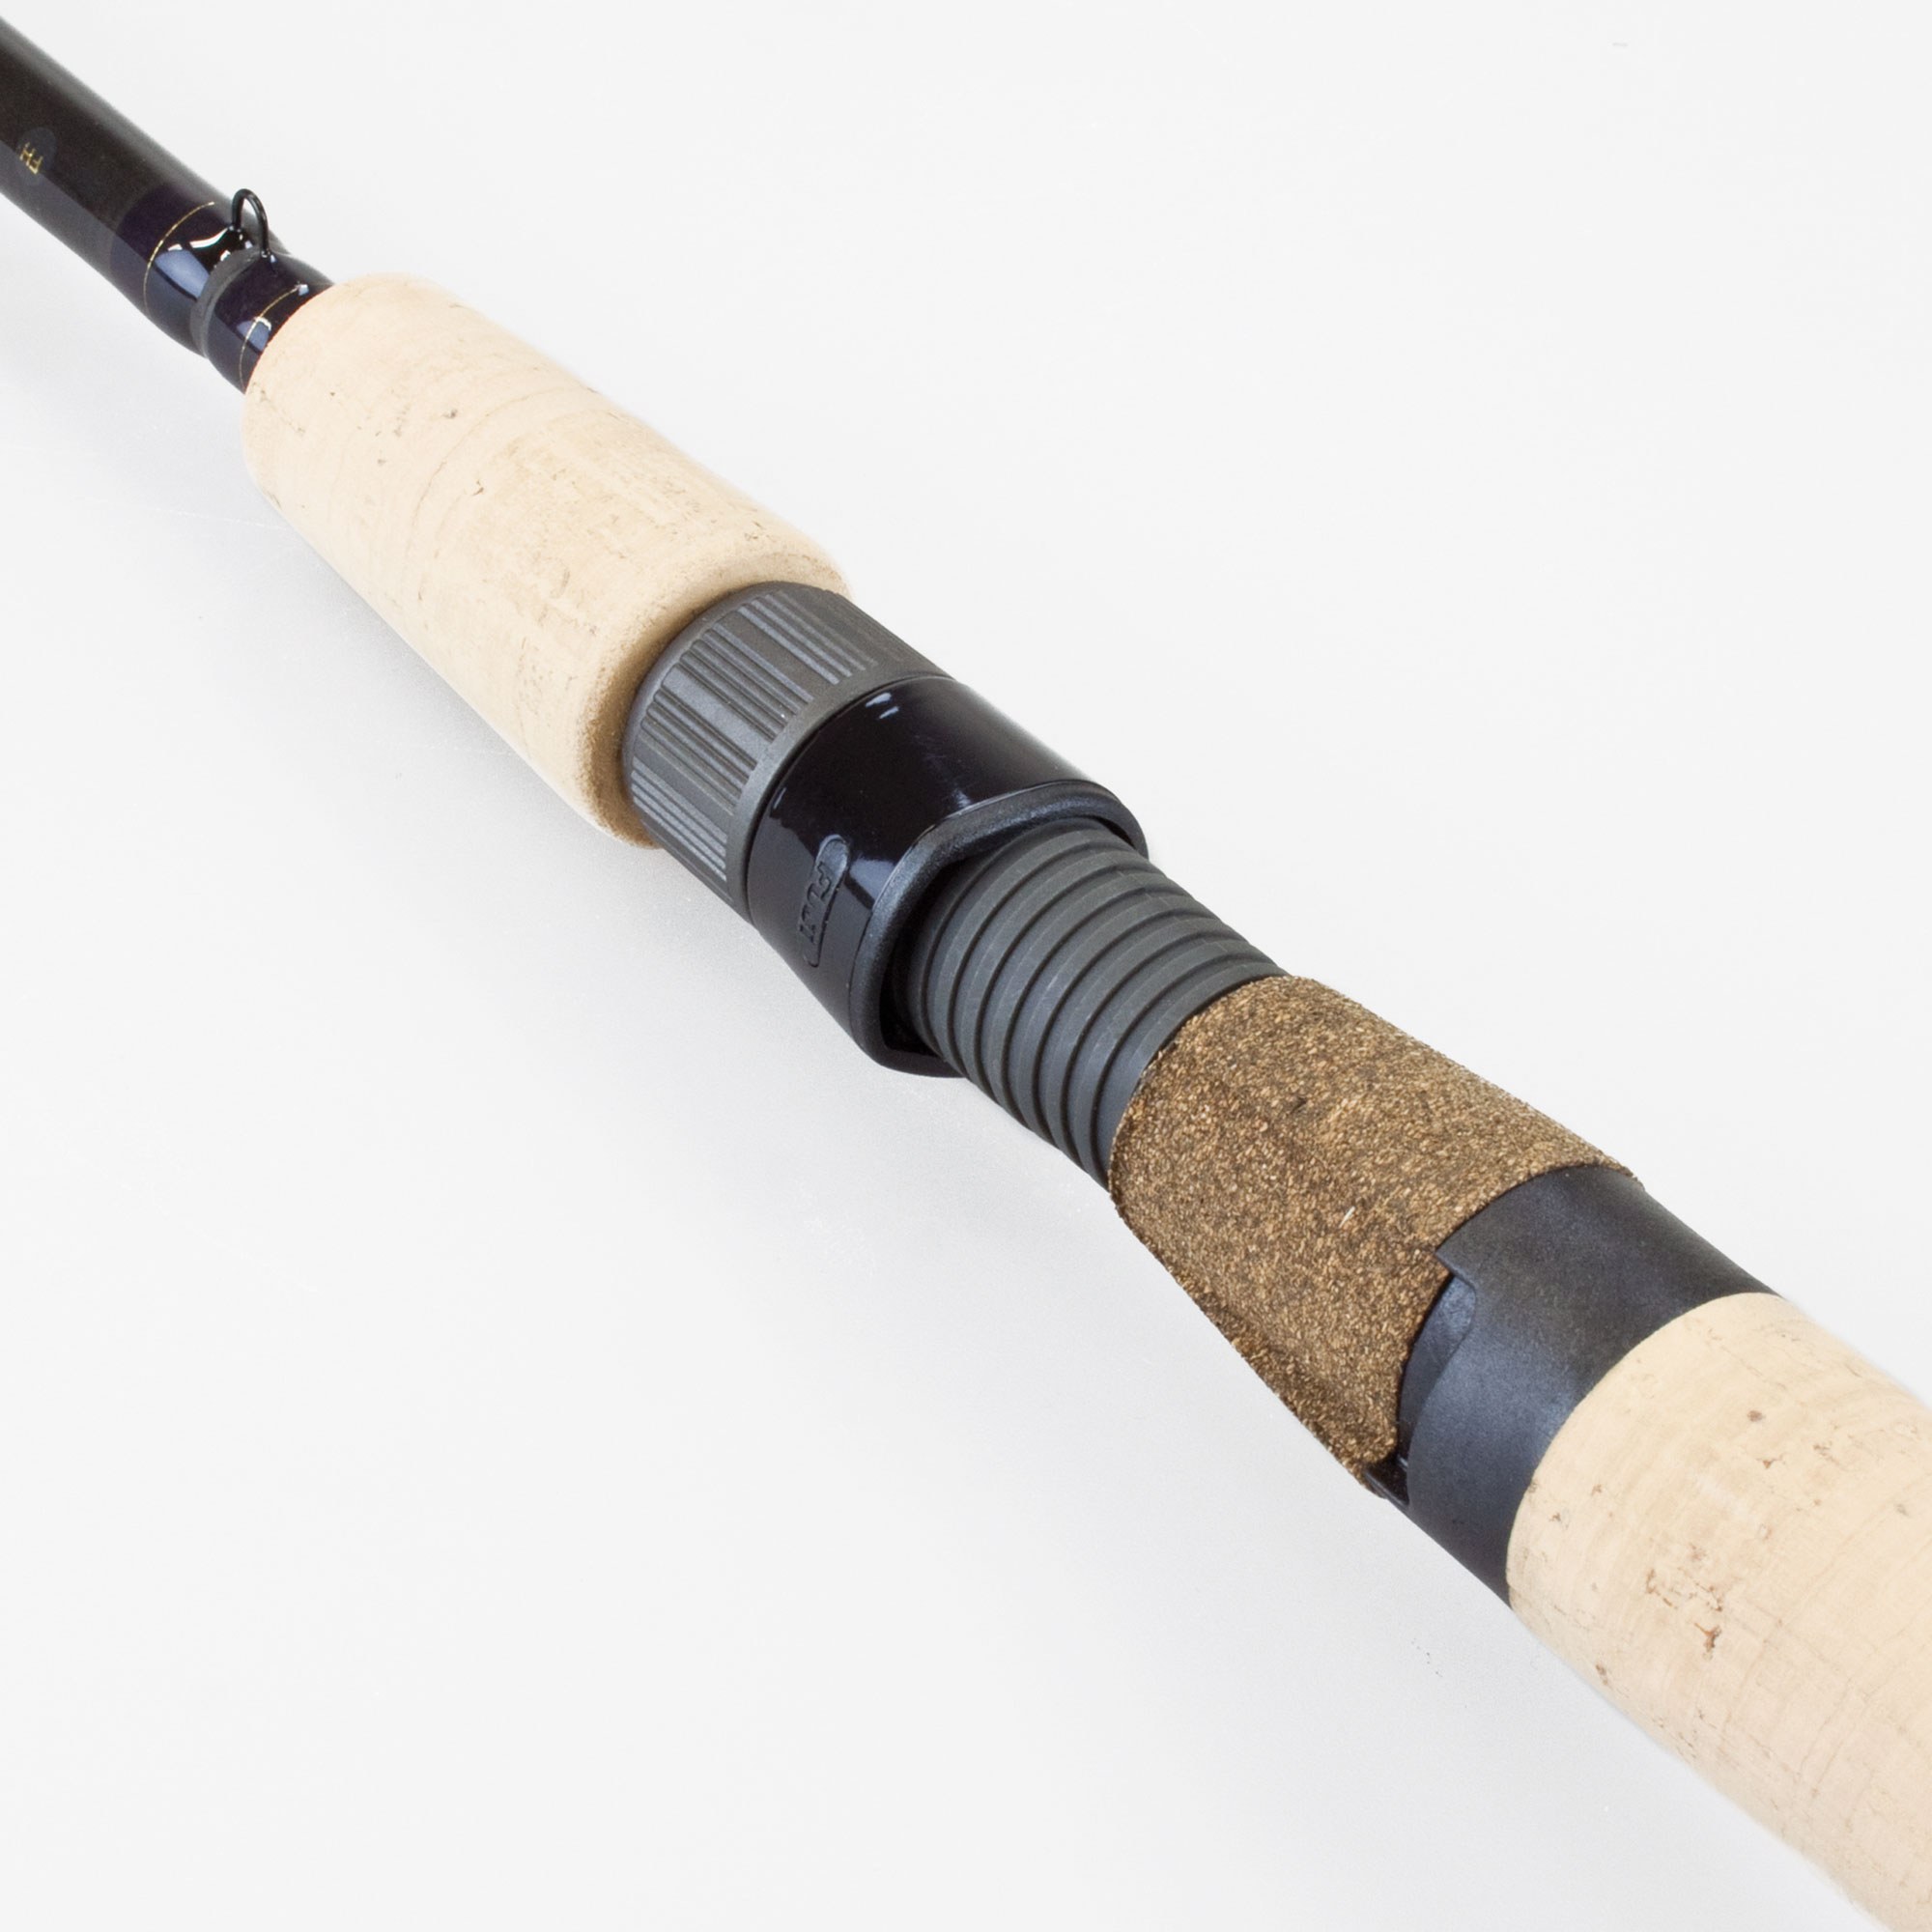 Max Fishing Rod EVA Handle Grip for Rod Building Repair